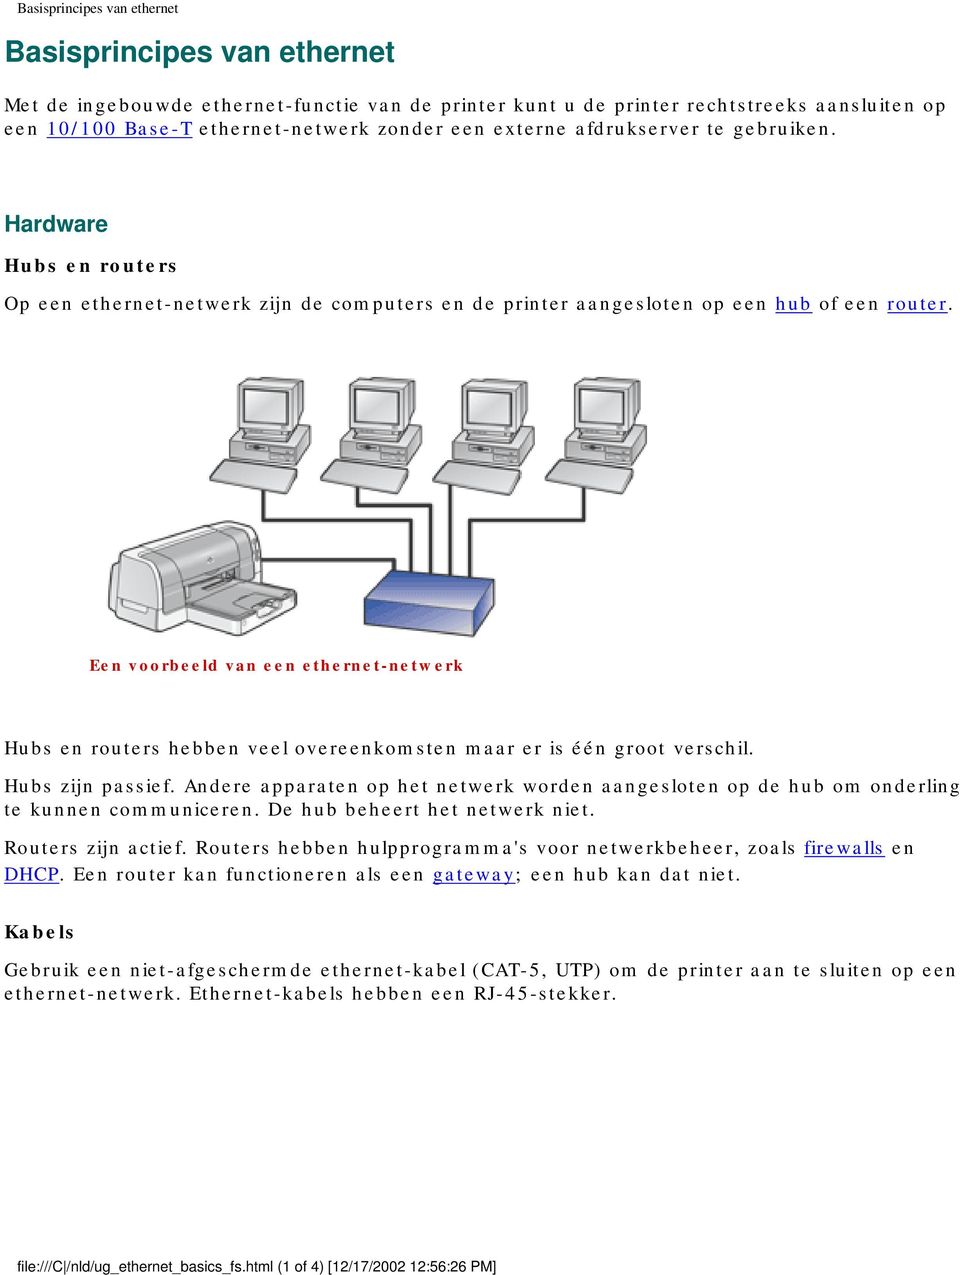 Een voorbeeld van een ethernet-netwerk Hubs en routers hebben veel overeenkomsten maar er is één groot verschil. Hubs zijn passief.